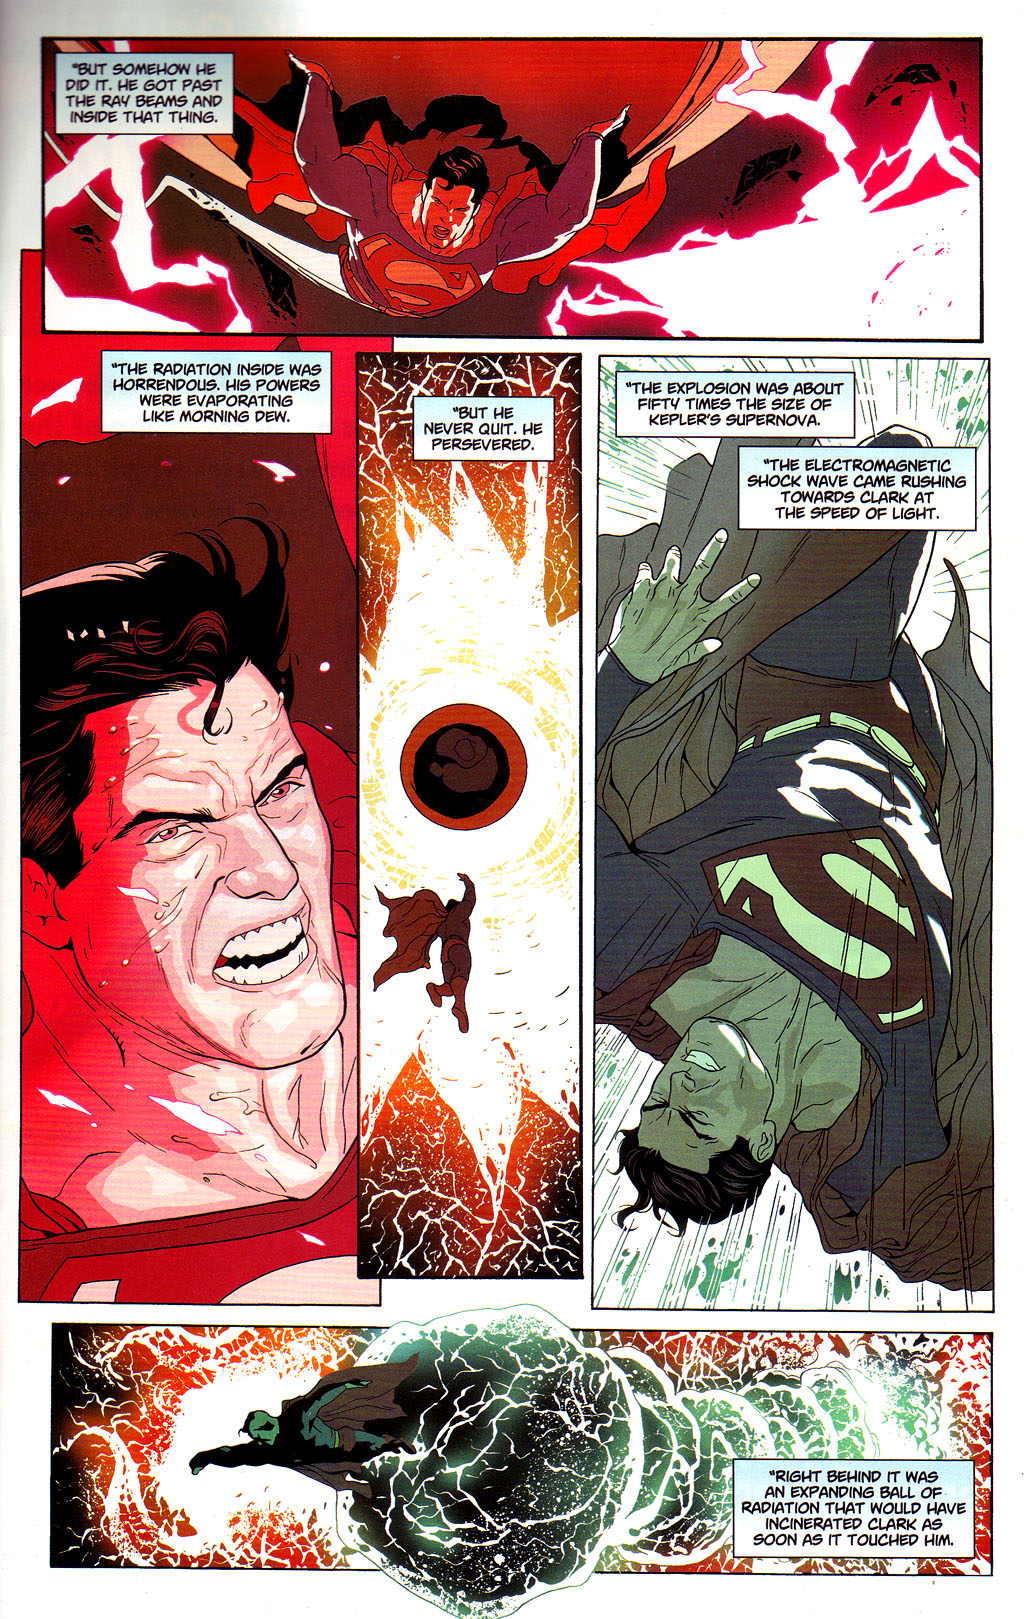 Planet Vegeta vs New Krypton - Battles - Comic Vine